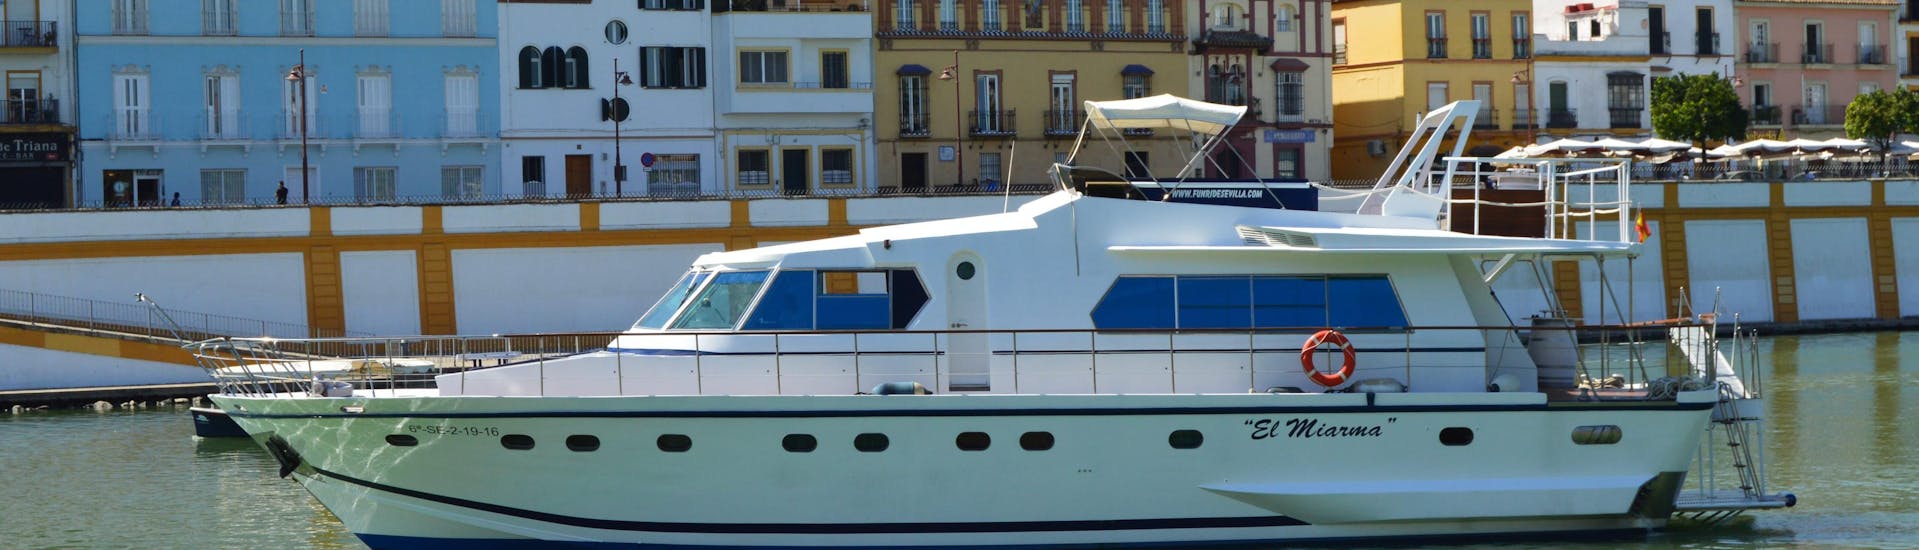 I partecipanti al tour non vedono l'ora di conoscere Siviglia in tutte le sue sfaccettature durante il loro viaggio in barca sul Fiume Guadalquivir con Seville City Tour da Fun Ride Sevilla.